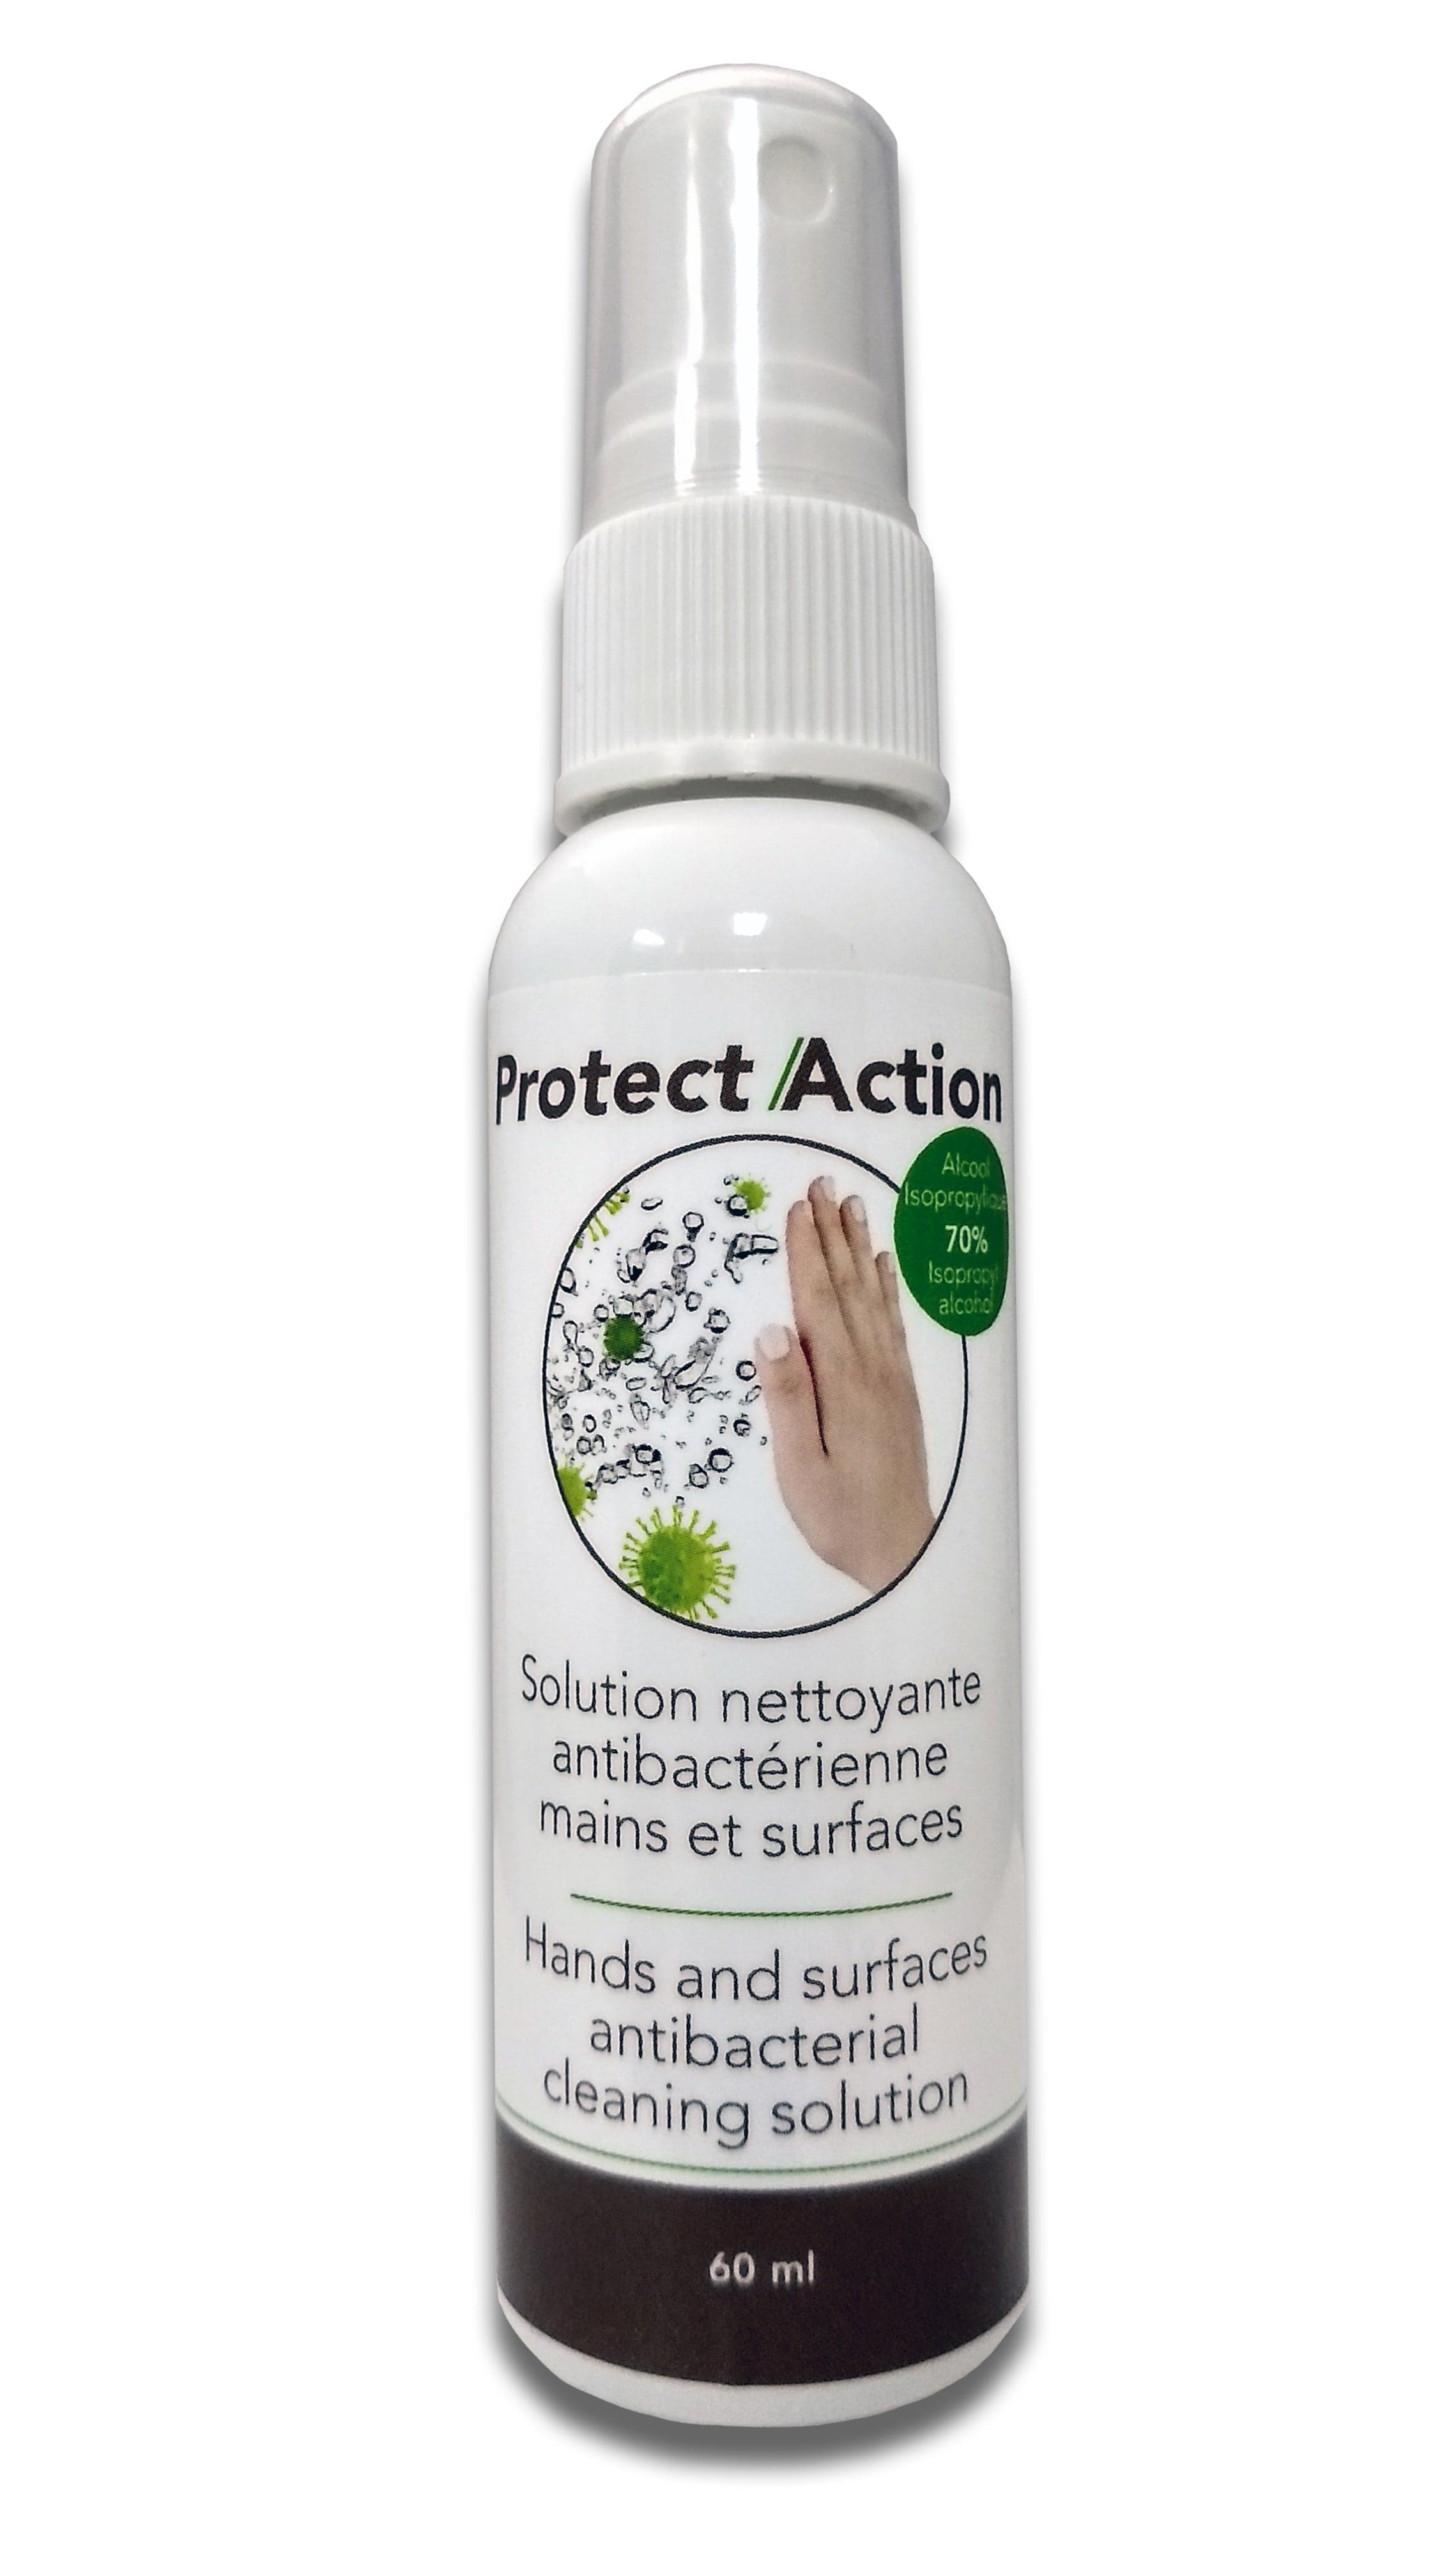 MONDE NATUREL DISTRIBUTION Soins & beauté Protect/Action (solution nettoyante antibactérienne mains et surfaces) 60ml